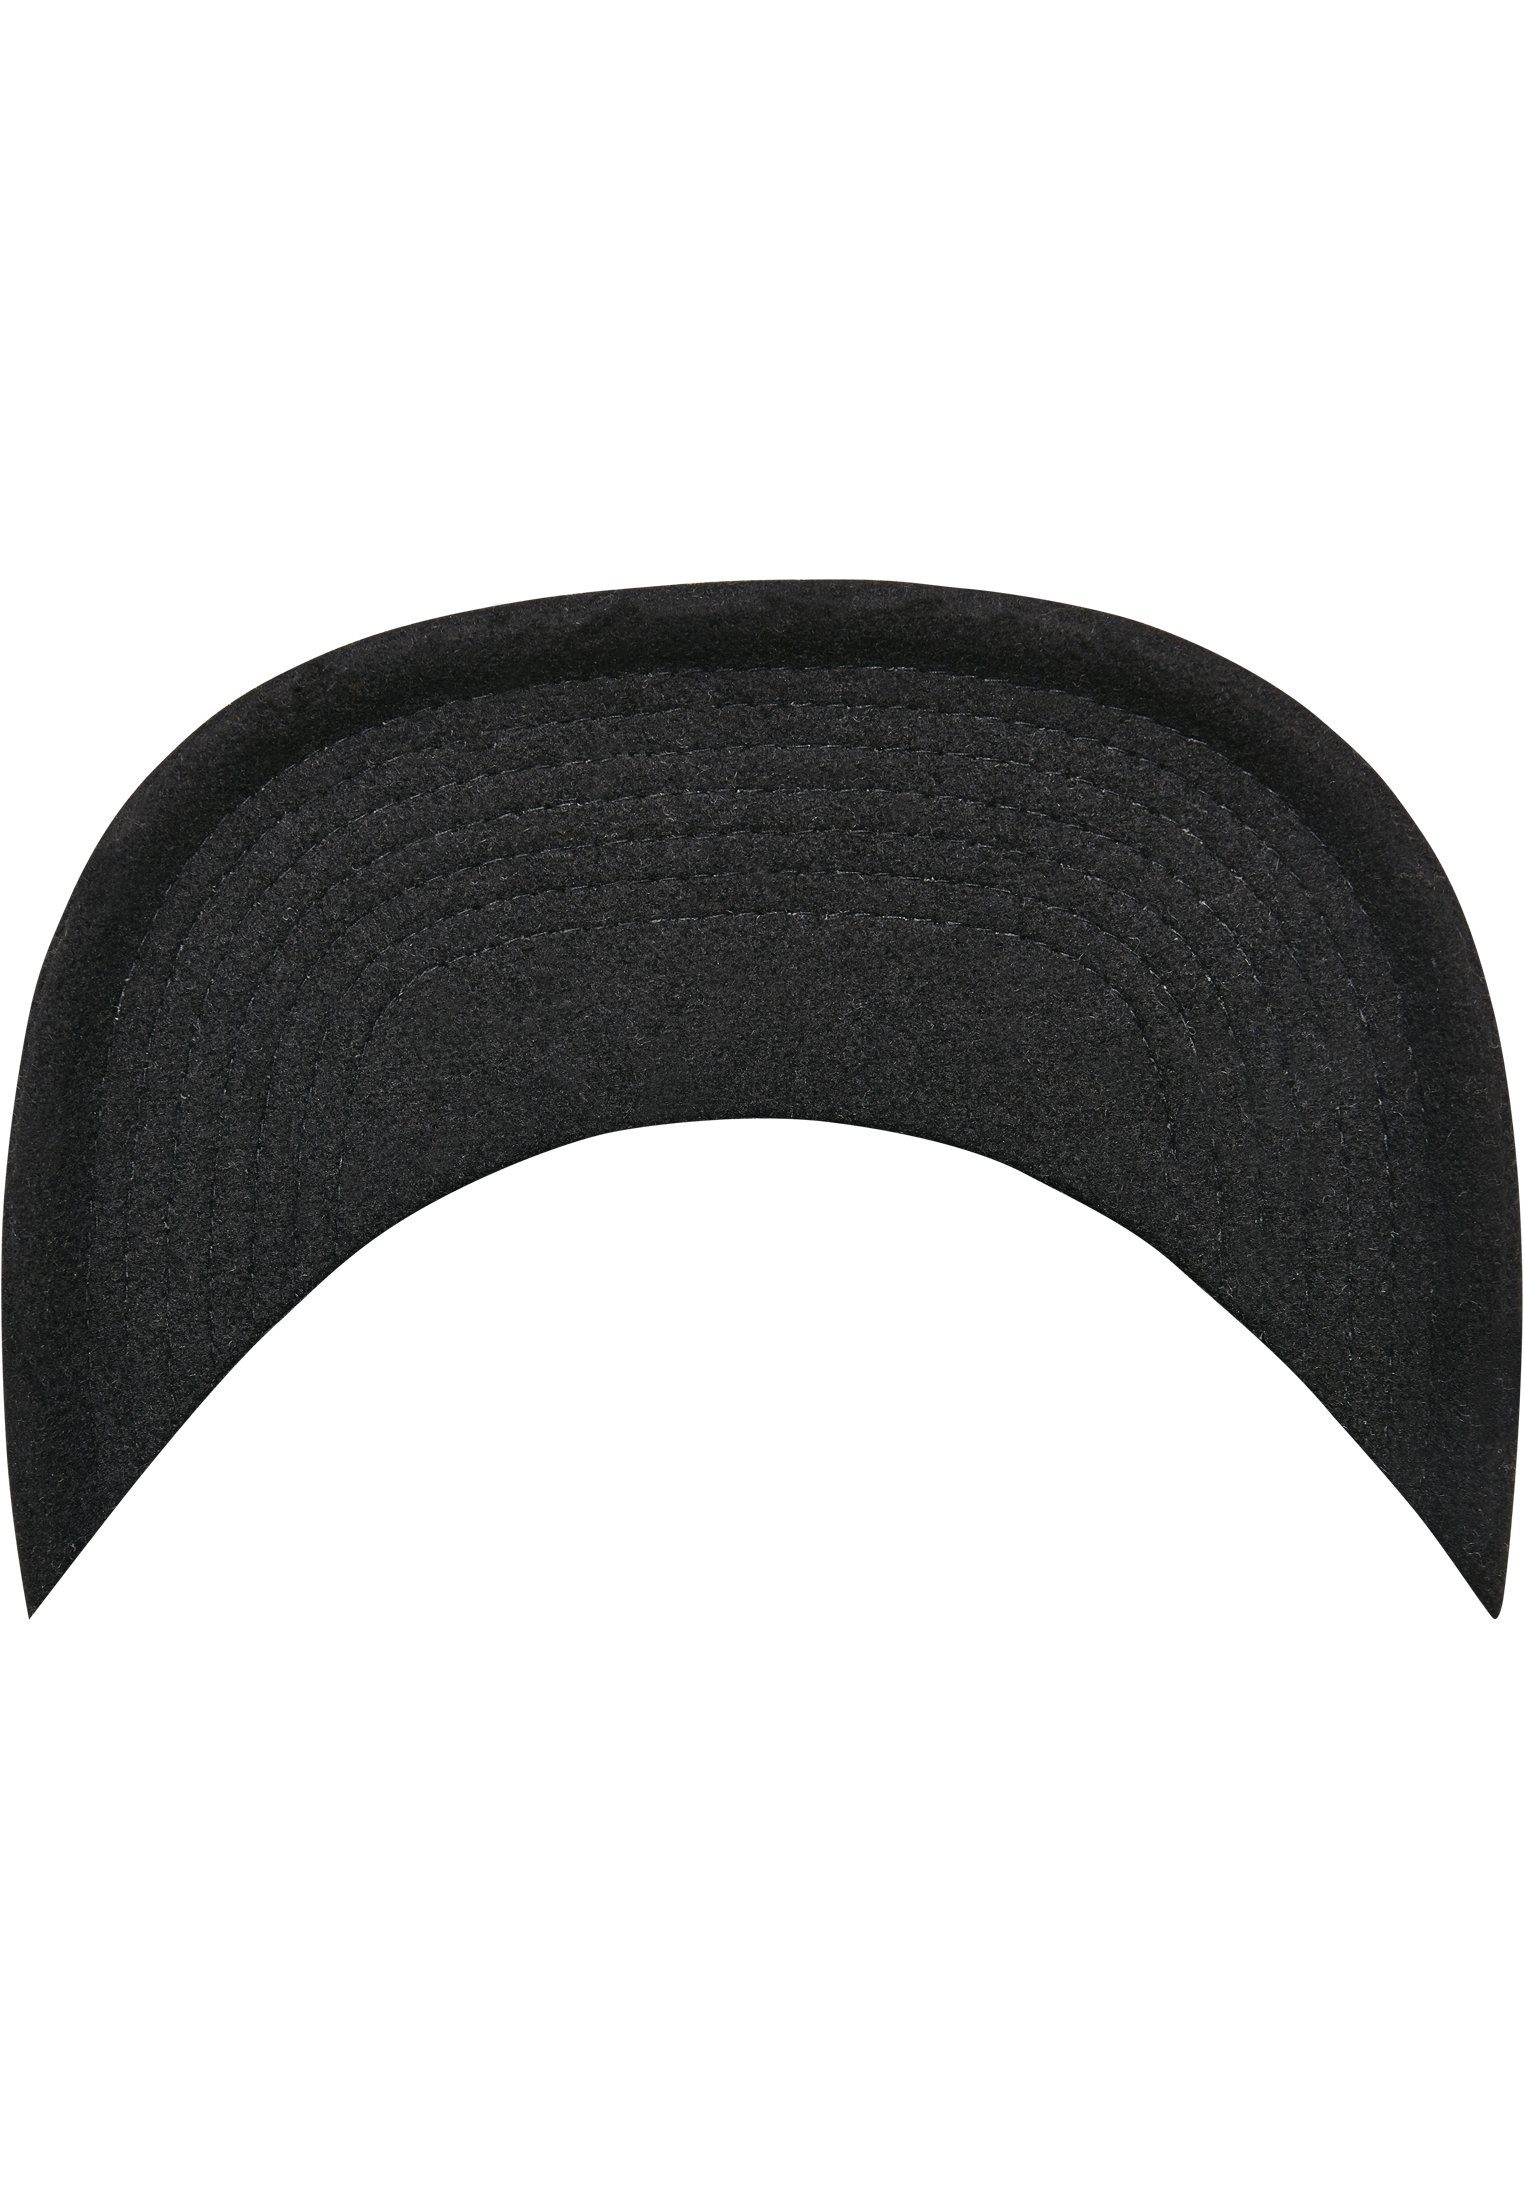 Flexfit Flex Cap Snapback Melton black Cap